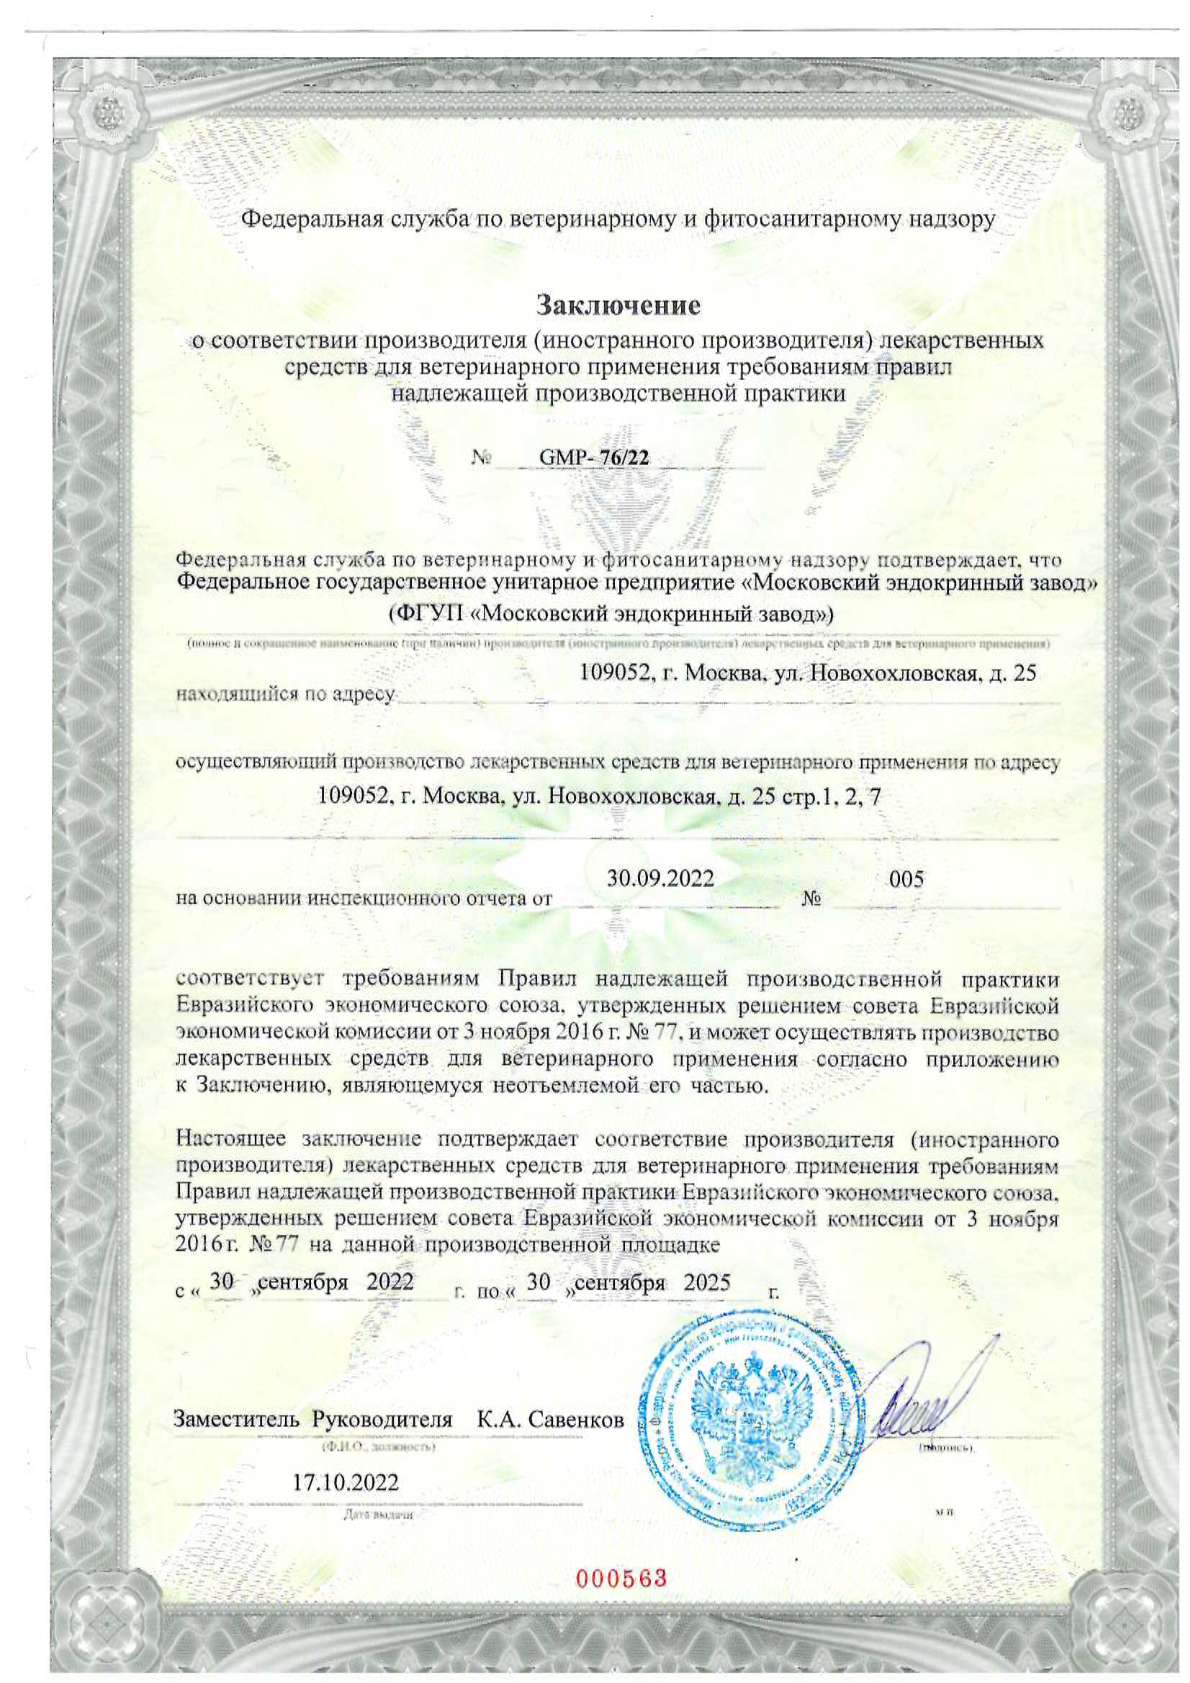 Правила надлежащей производственной практики евразийского экономического. Заключение о соответствии тре. Сертификат GMP российские производители лекарственных средств. Сертификат GMP на оборудование. Сертификат надлежащей производственной практики по требованиям ЕАЭС.